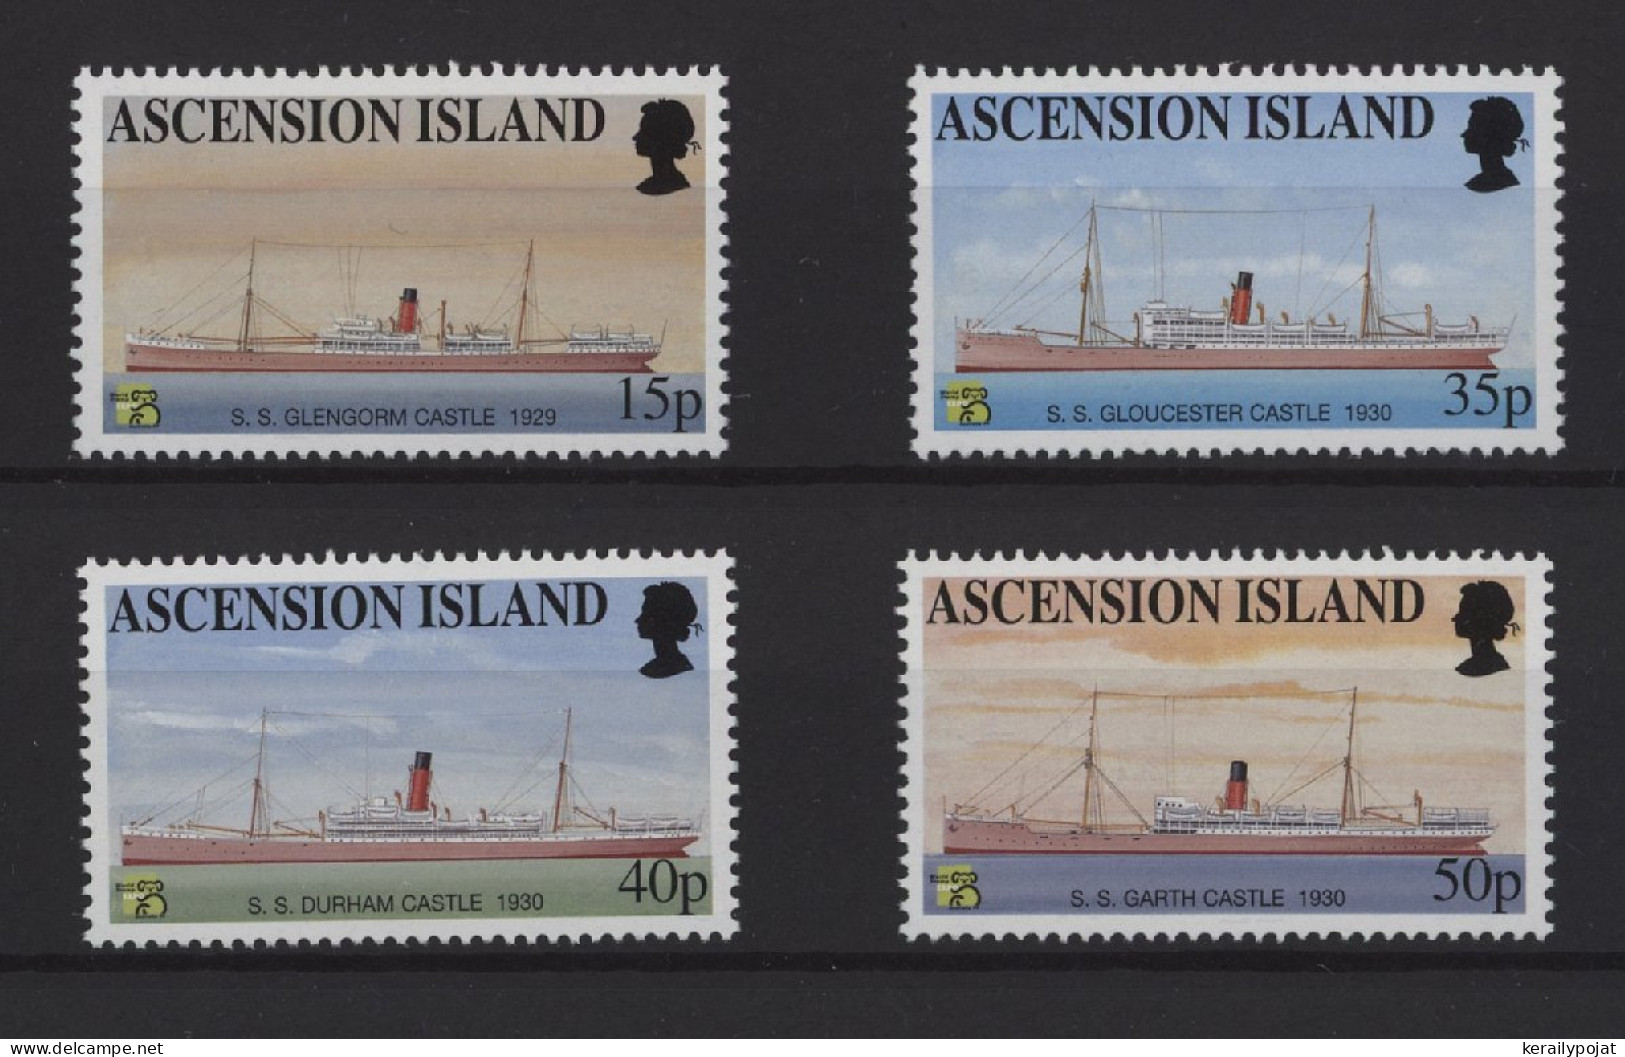 Ascension - 1999 Mail Ships MNH__(TH-25218) - Ascension (Ile De L')